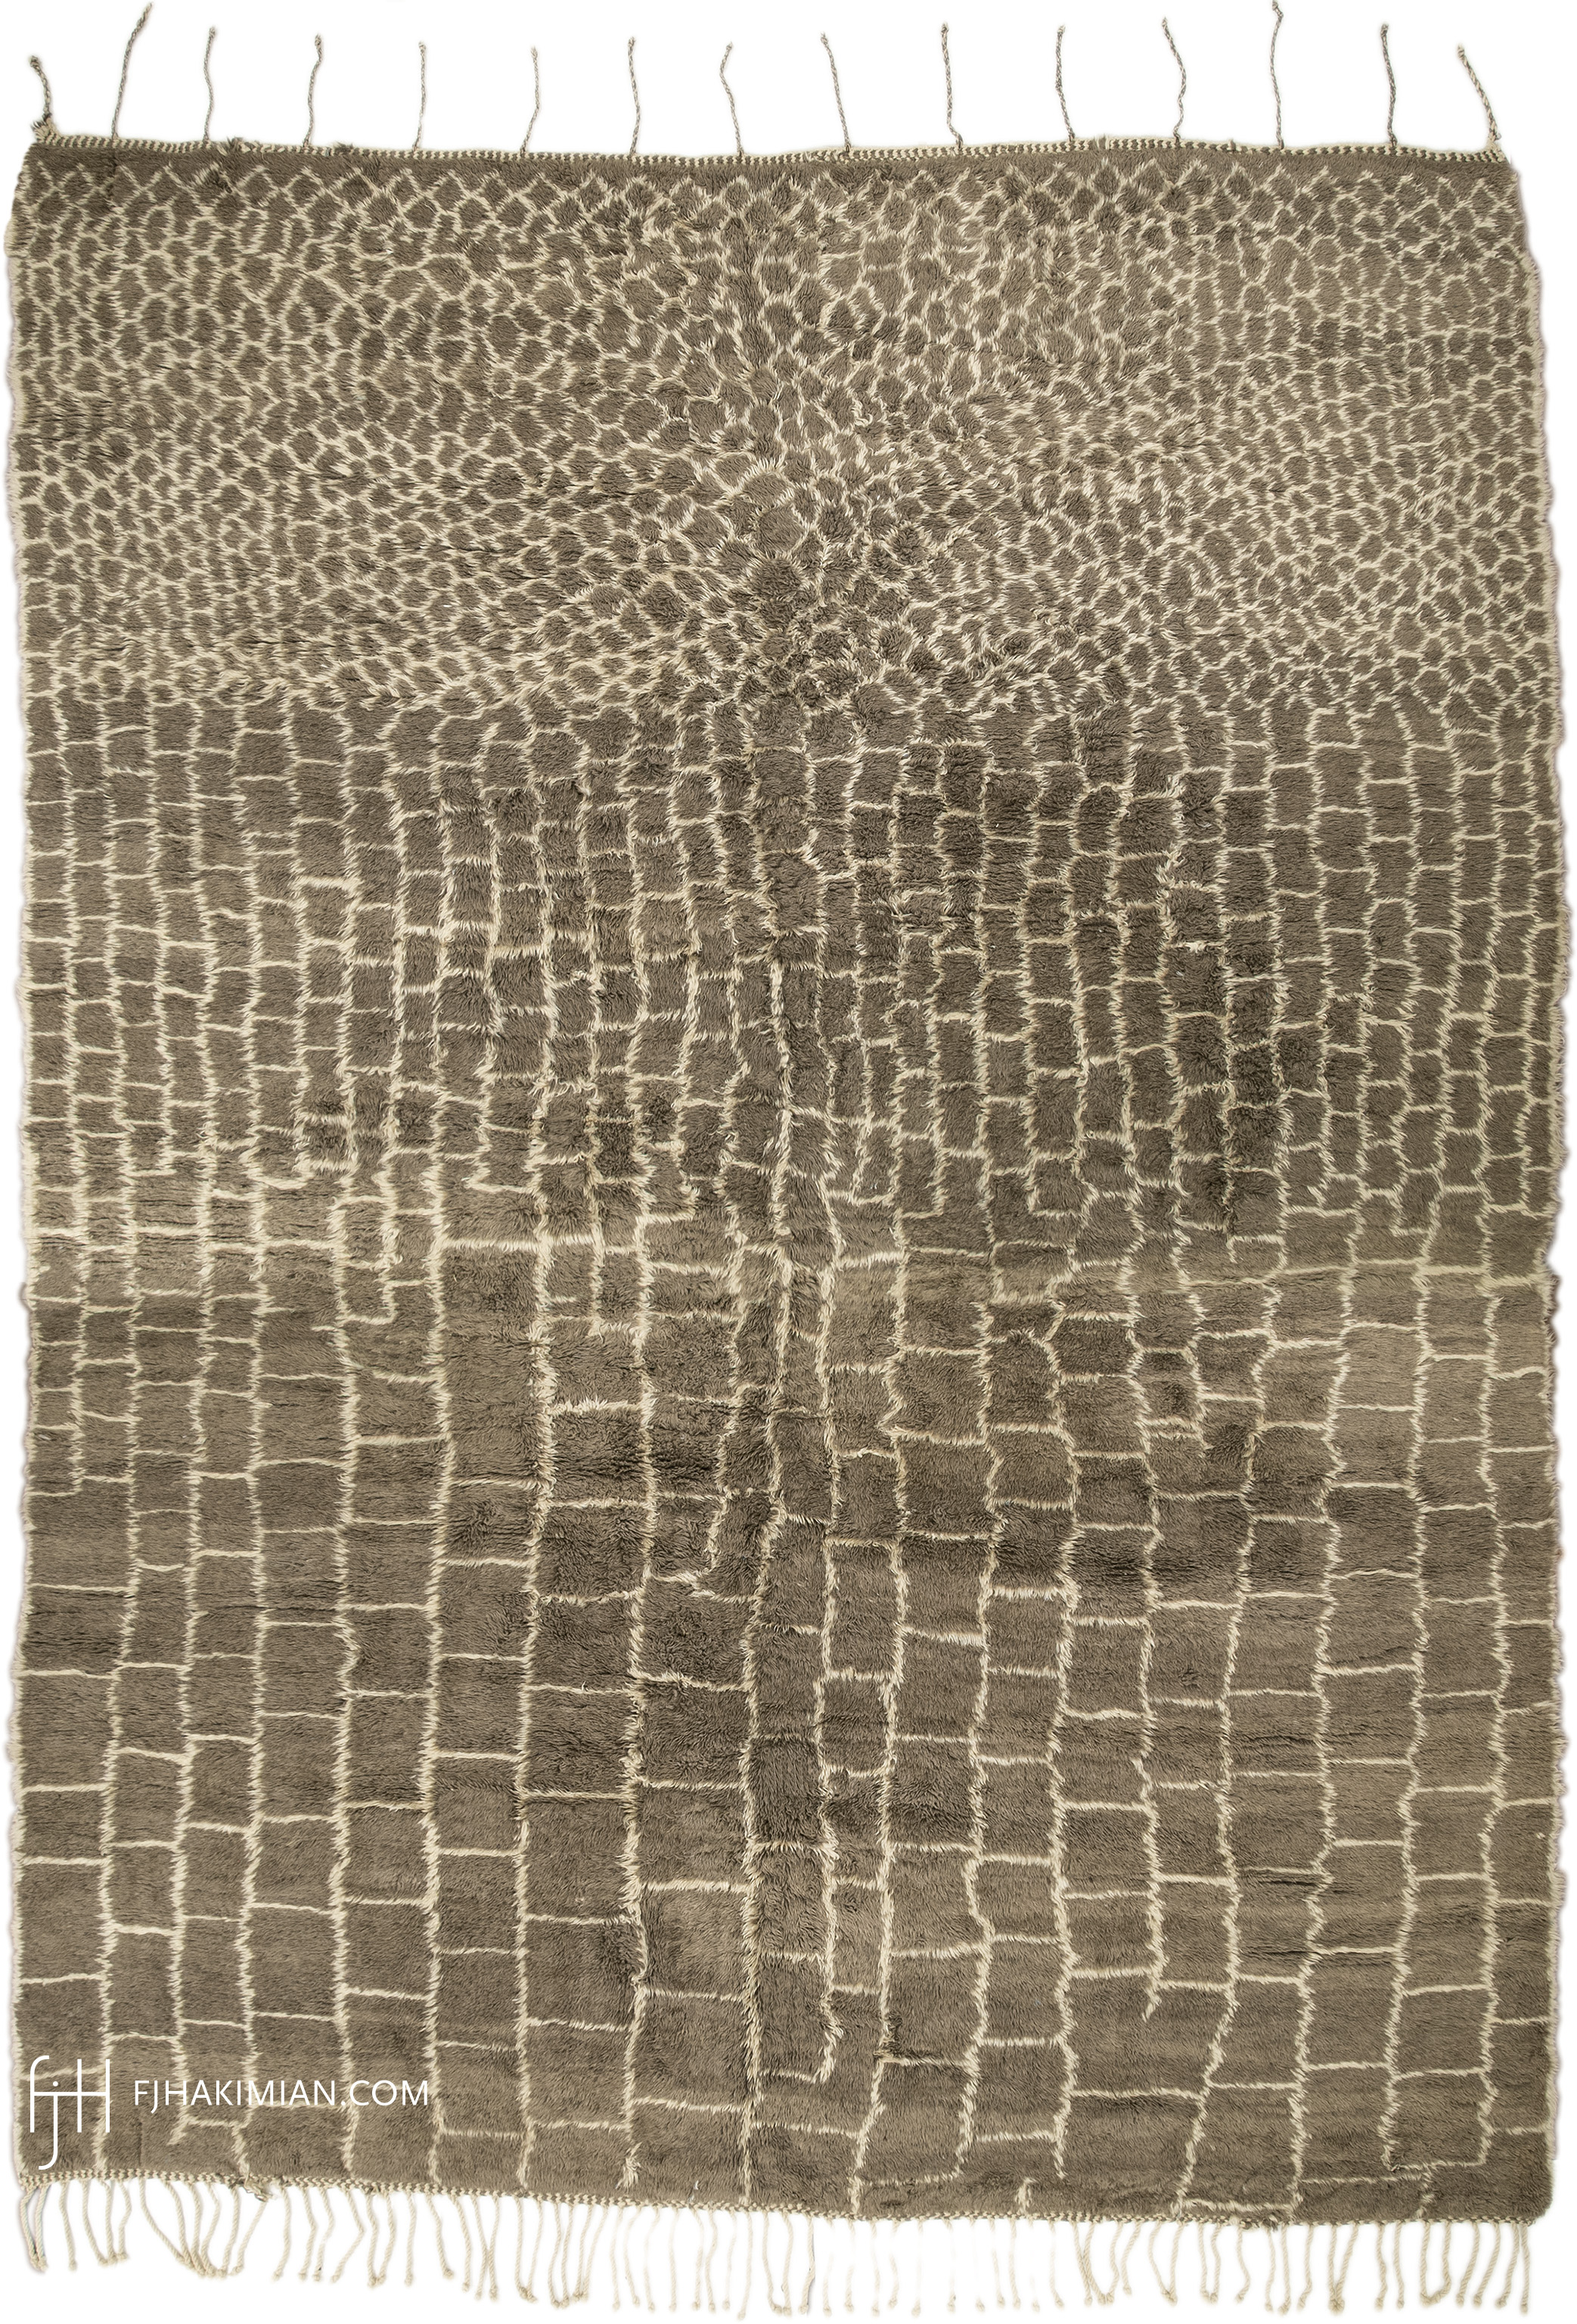 FJ Hakimian | 15194 | Berber Carpet